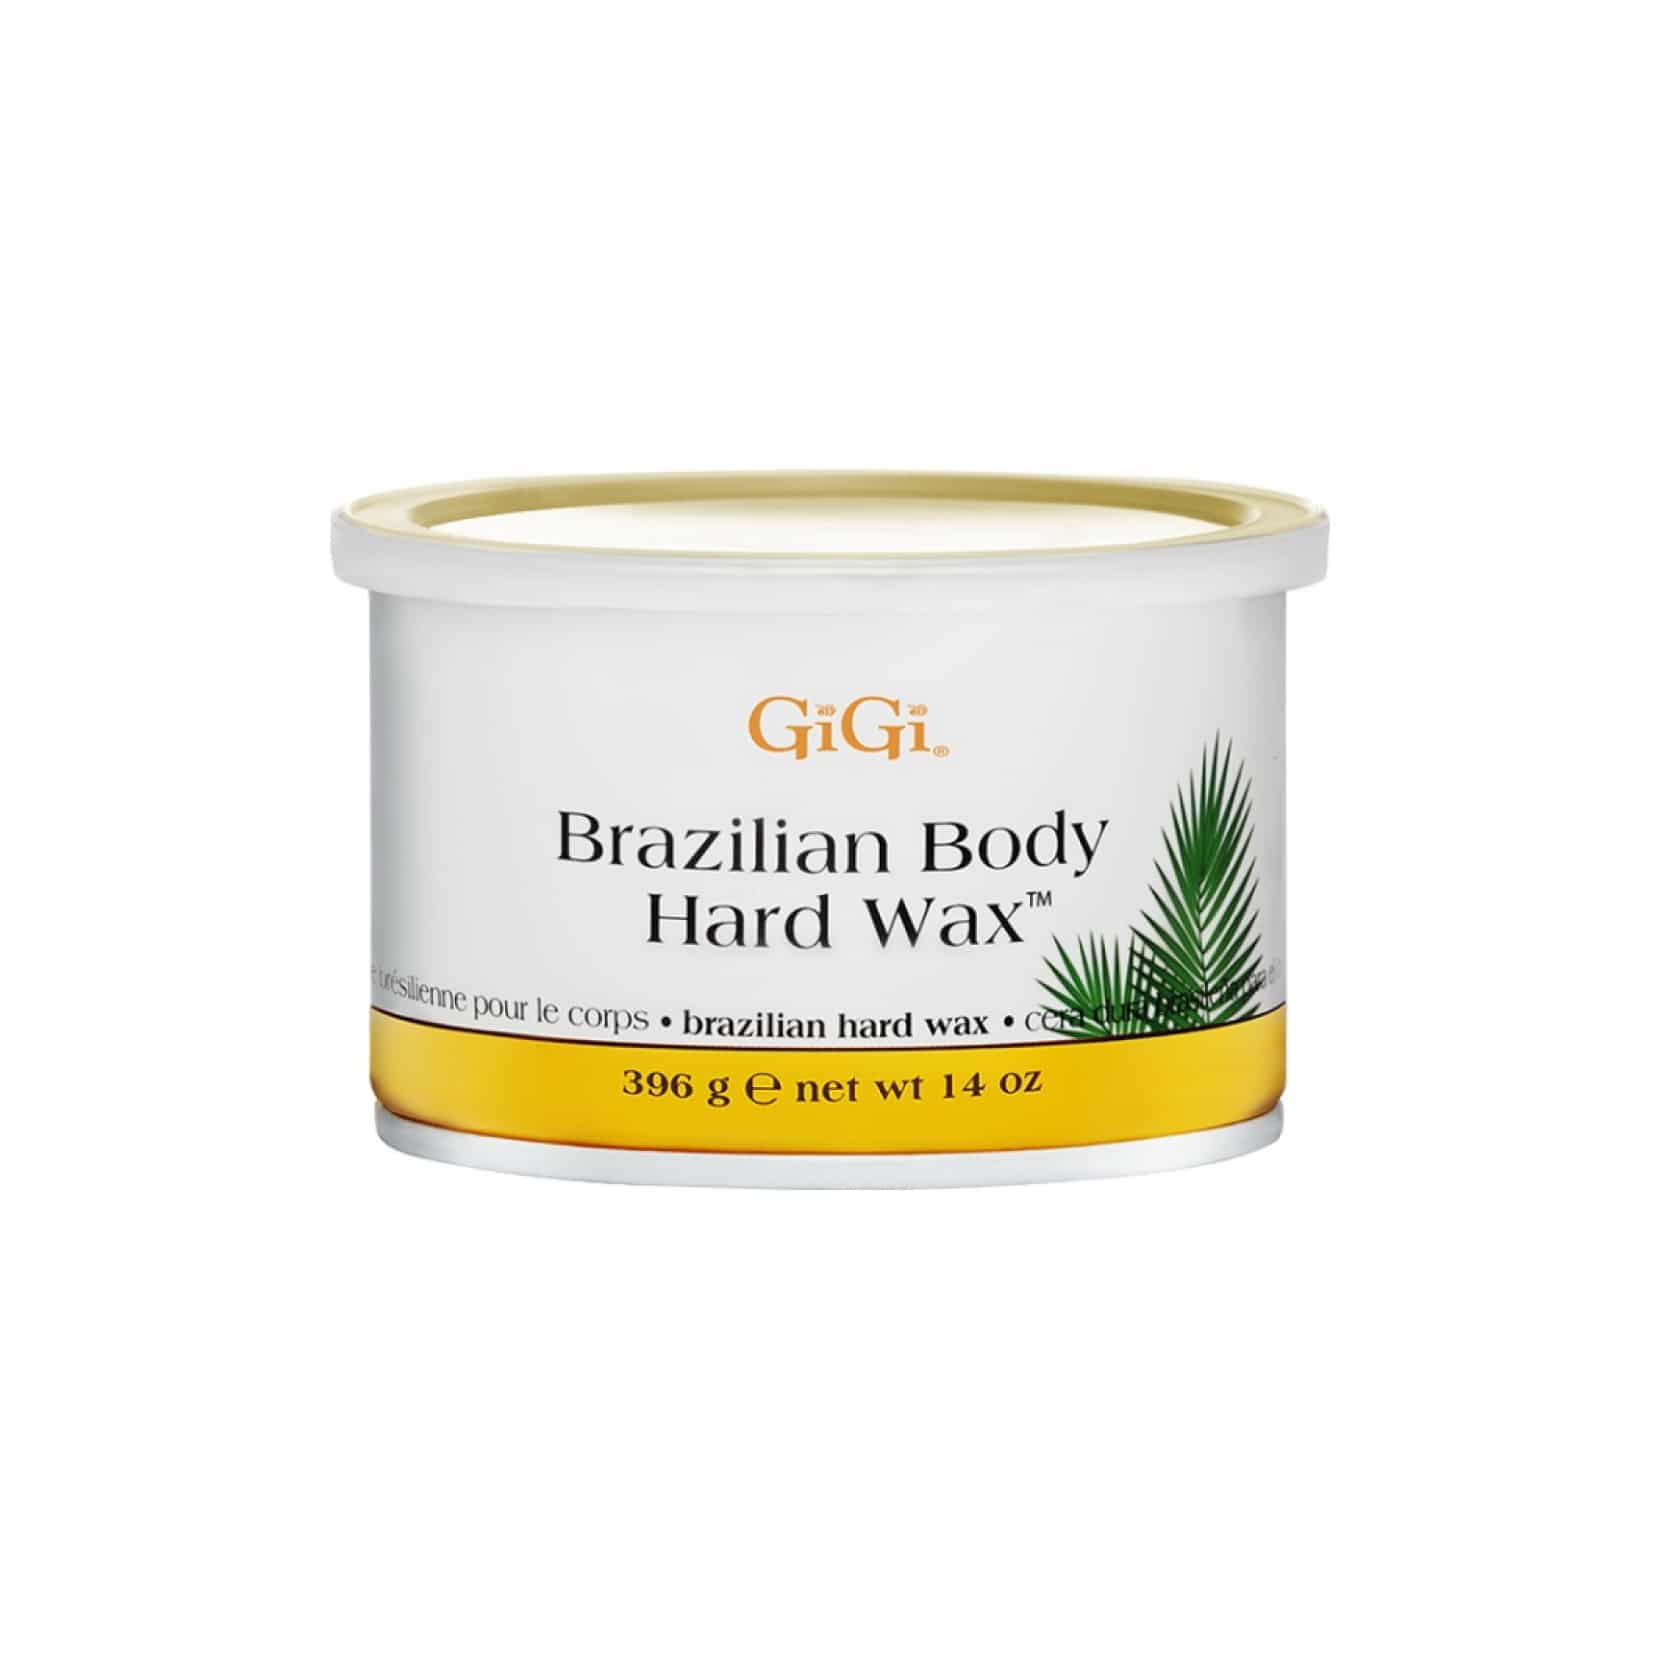 GiGi Brazilian Body Hard Wax 14oz - GG0899 - Barber Depot - Barber Supply